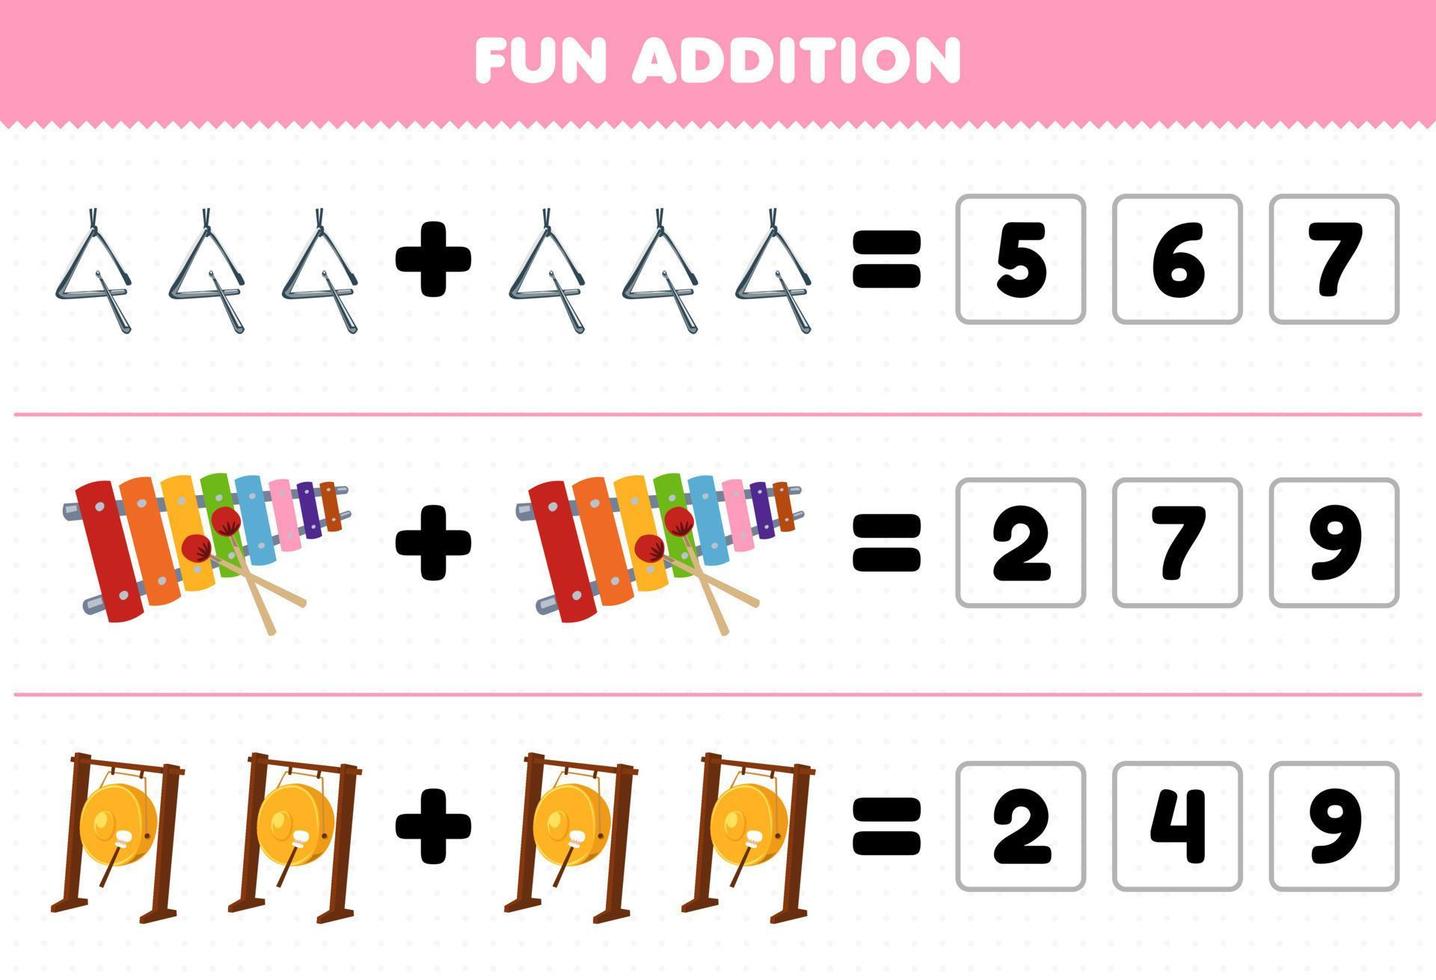 jeu éducatif pour les enfants ajout amusant en devinant le nombre correct d'instrument de musique de dessin animé triangle xylophone gong feuille de travail imprimable vecteur